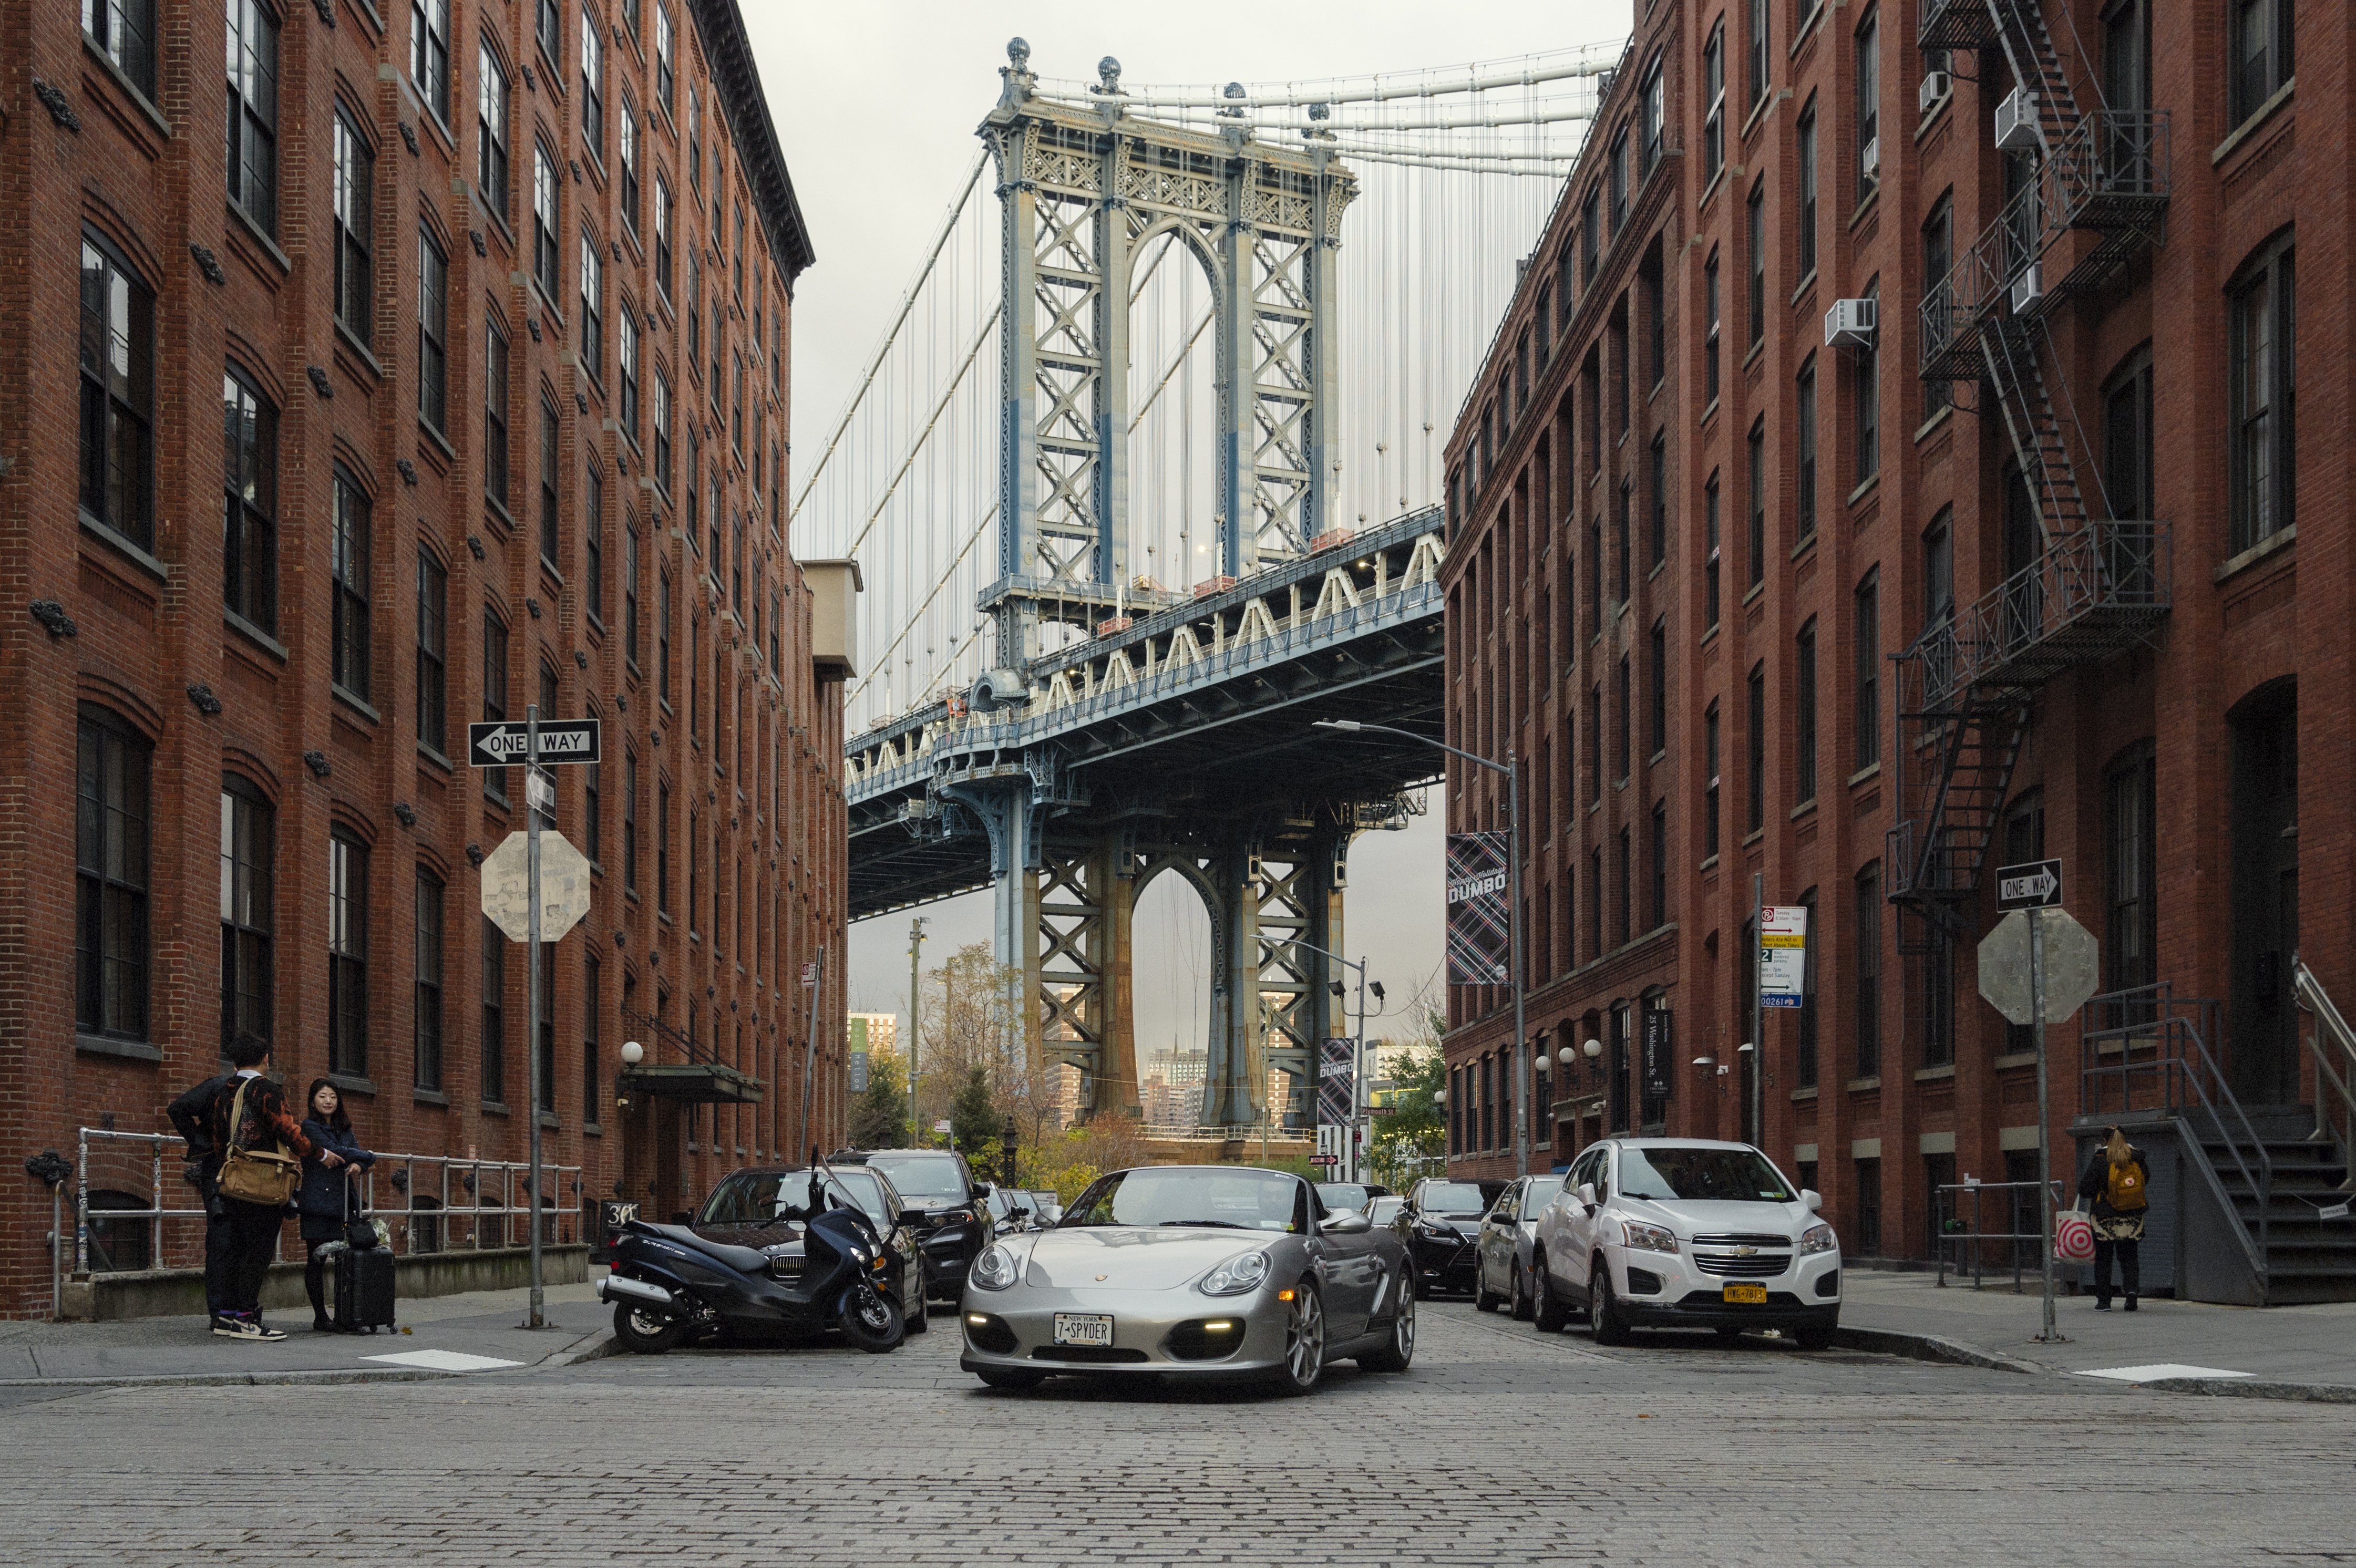 Porsche Boxster Spyder under Brooklyn Bridge, New York in background